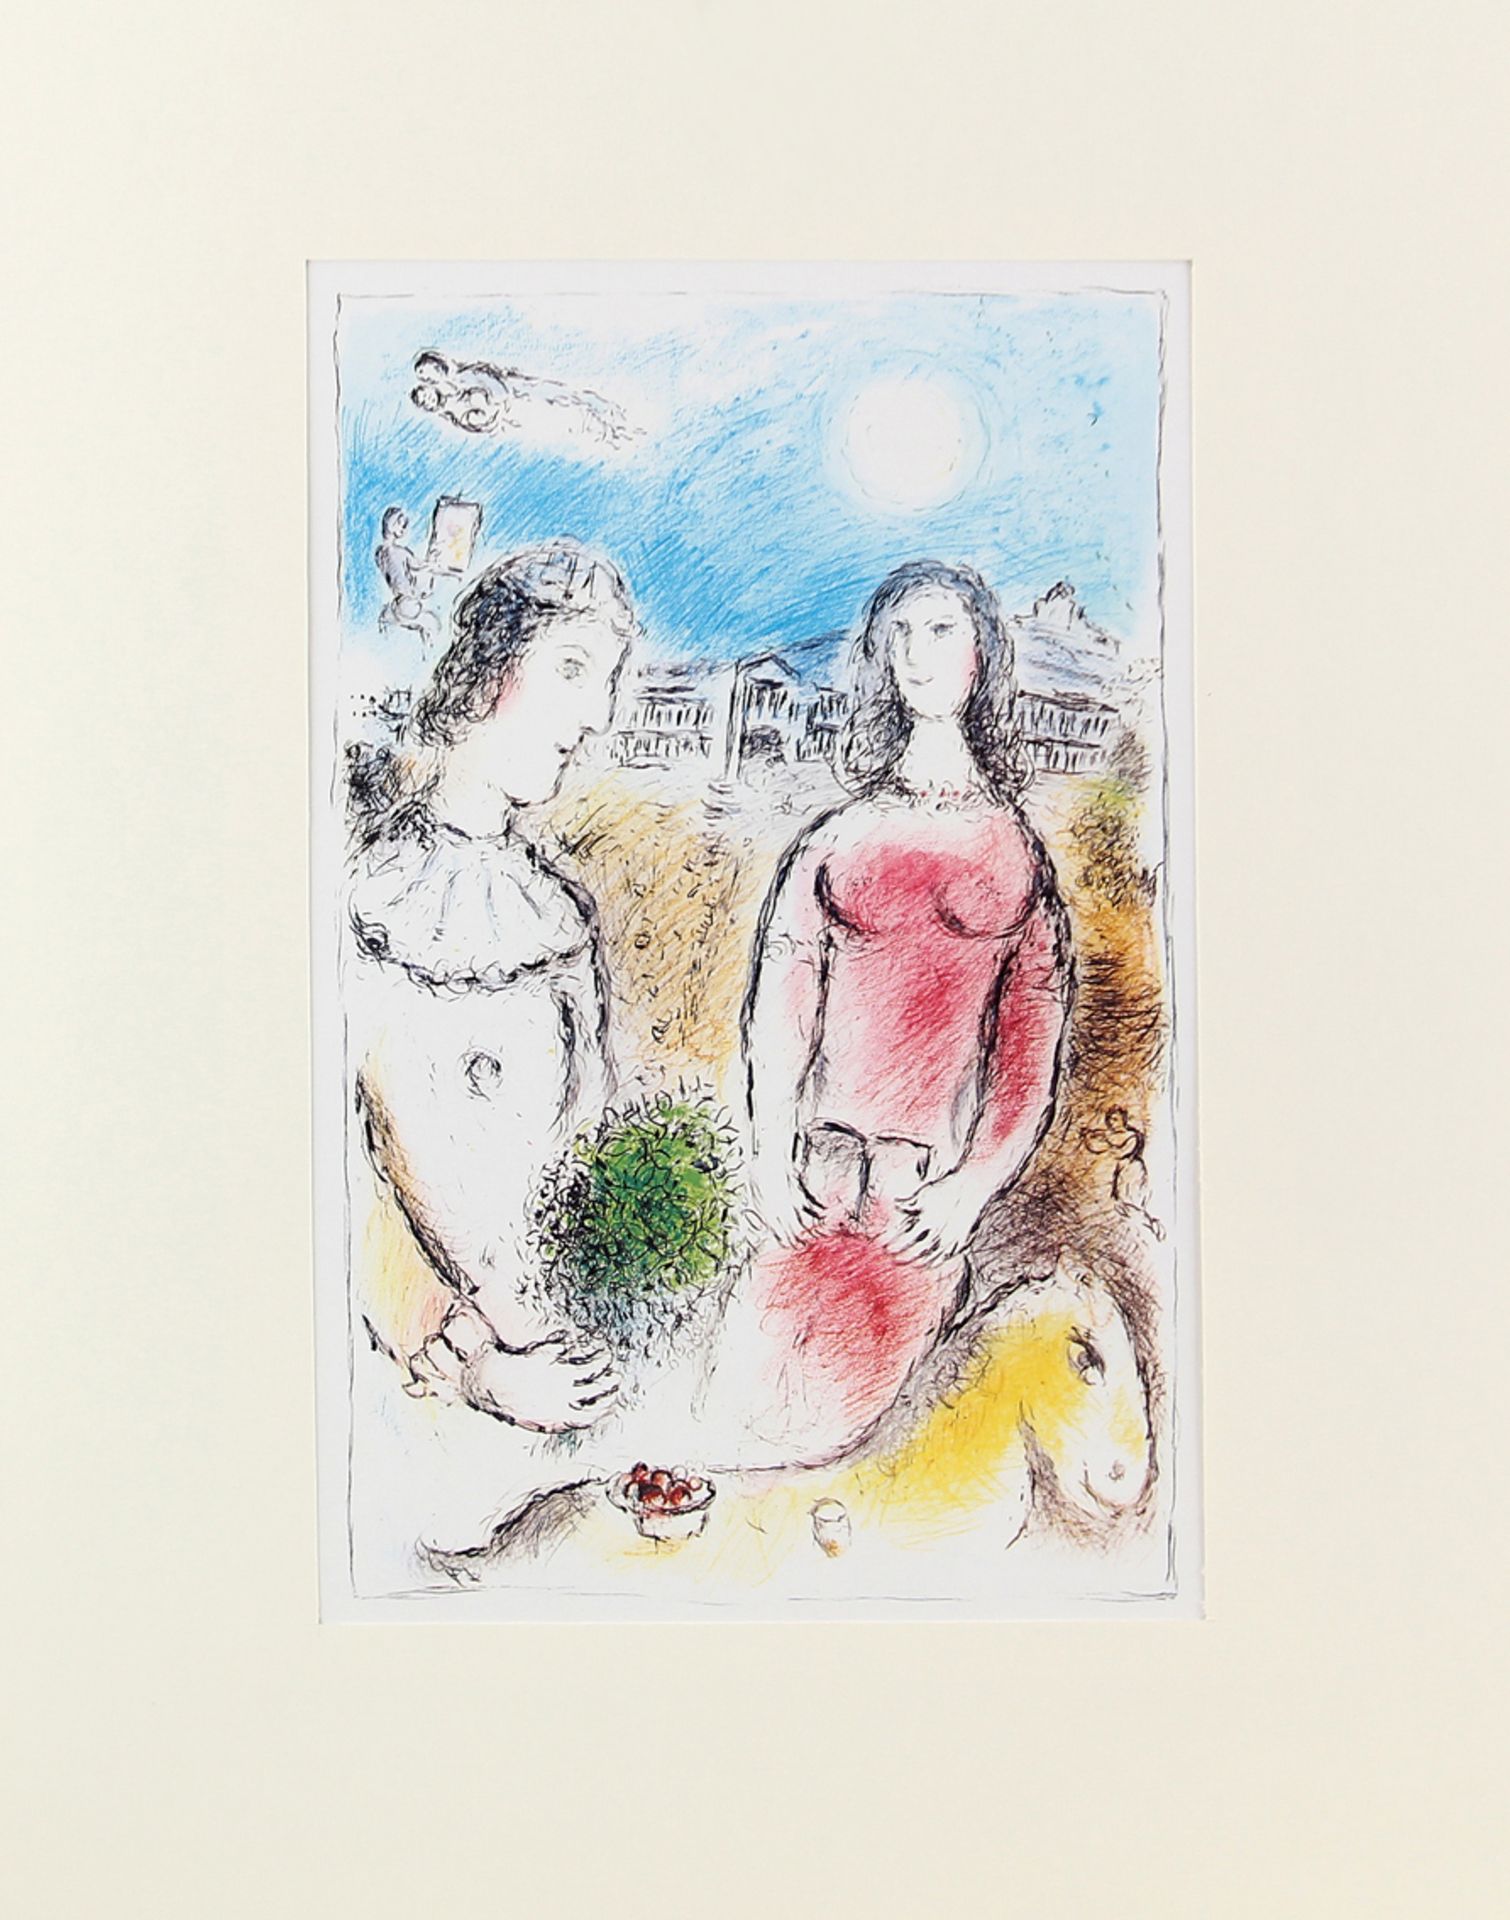 Chagall, Marc, Le couple au crépuscule